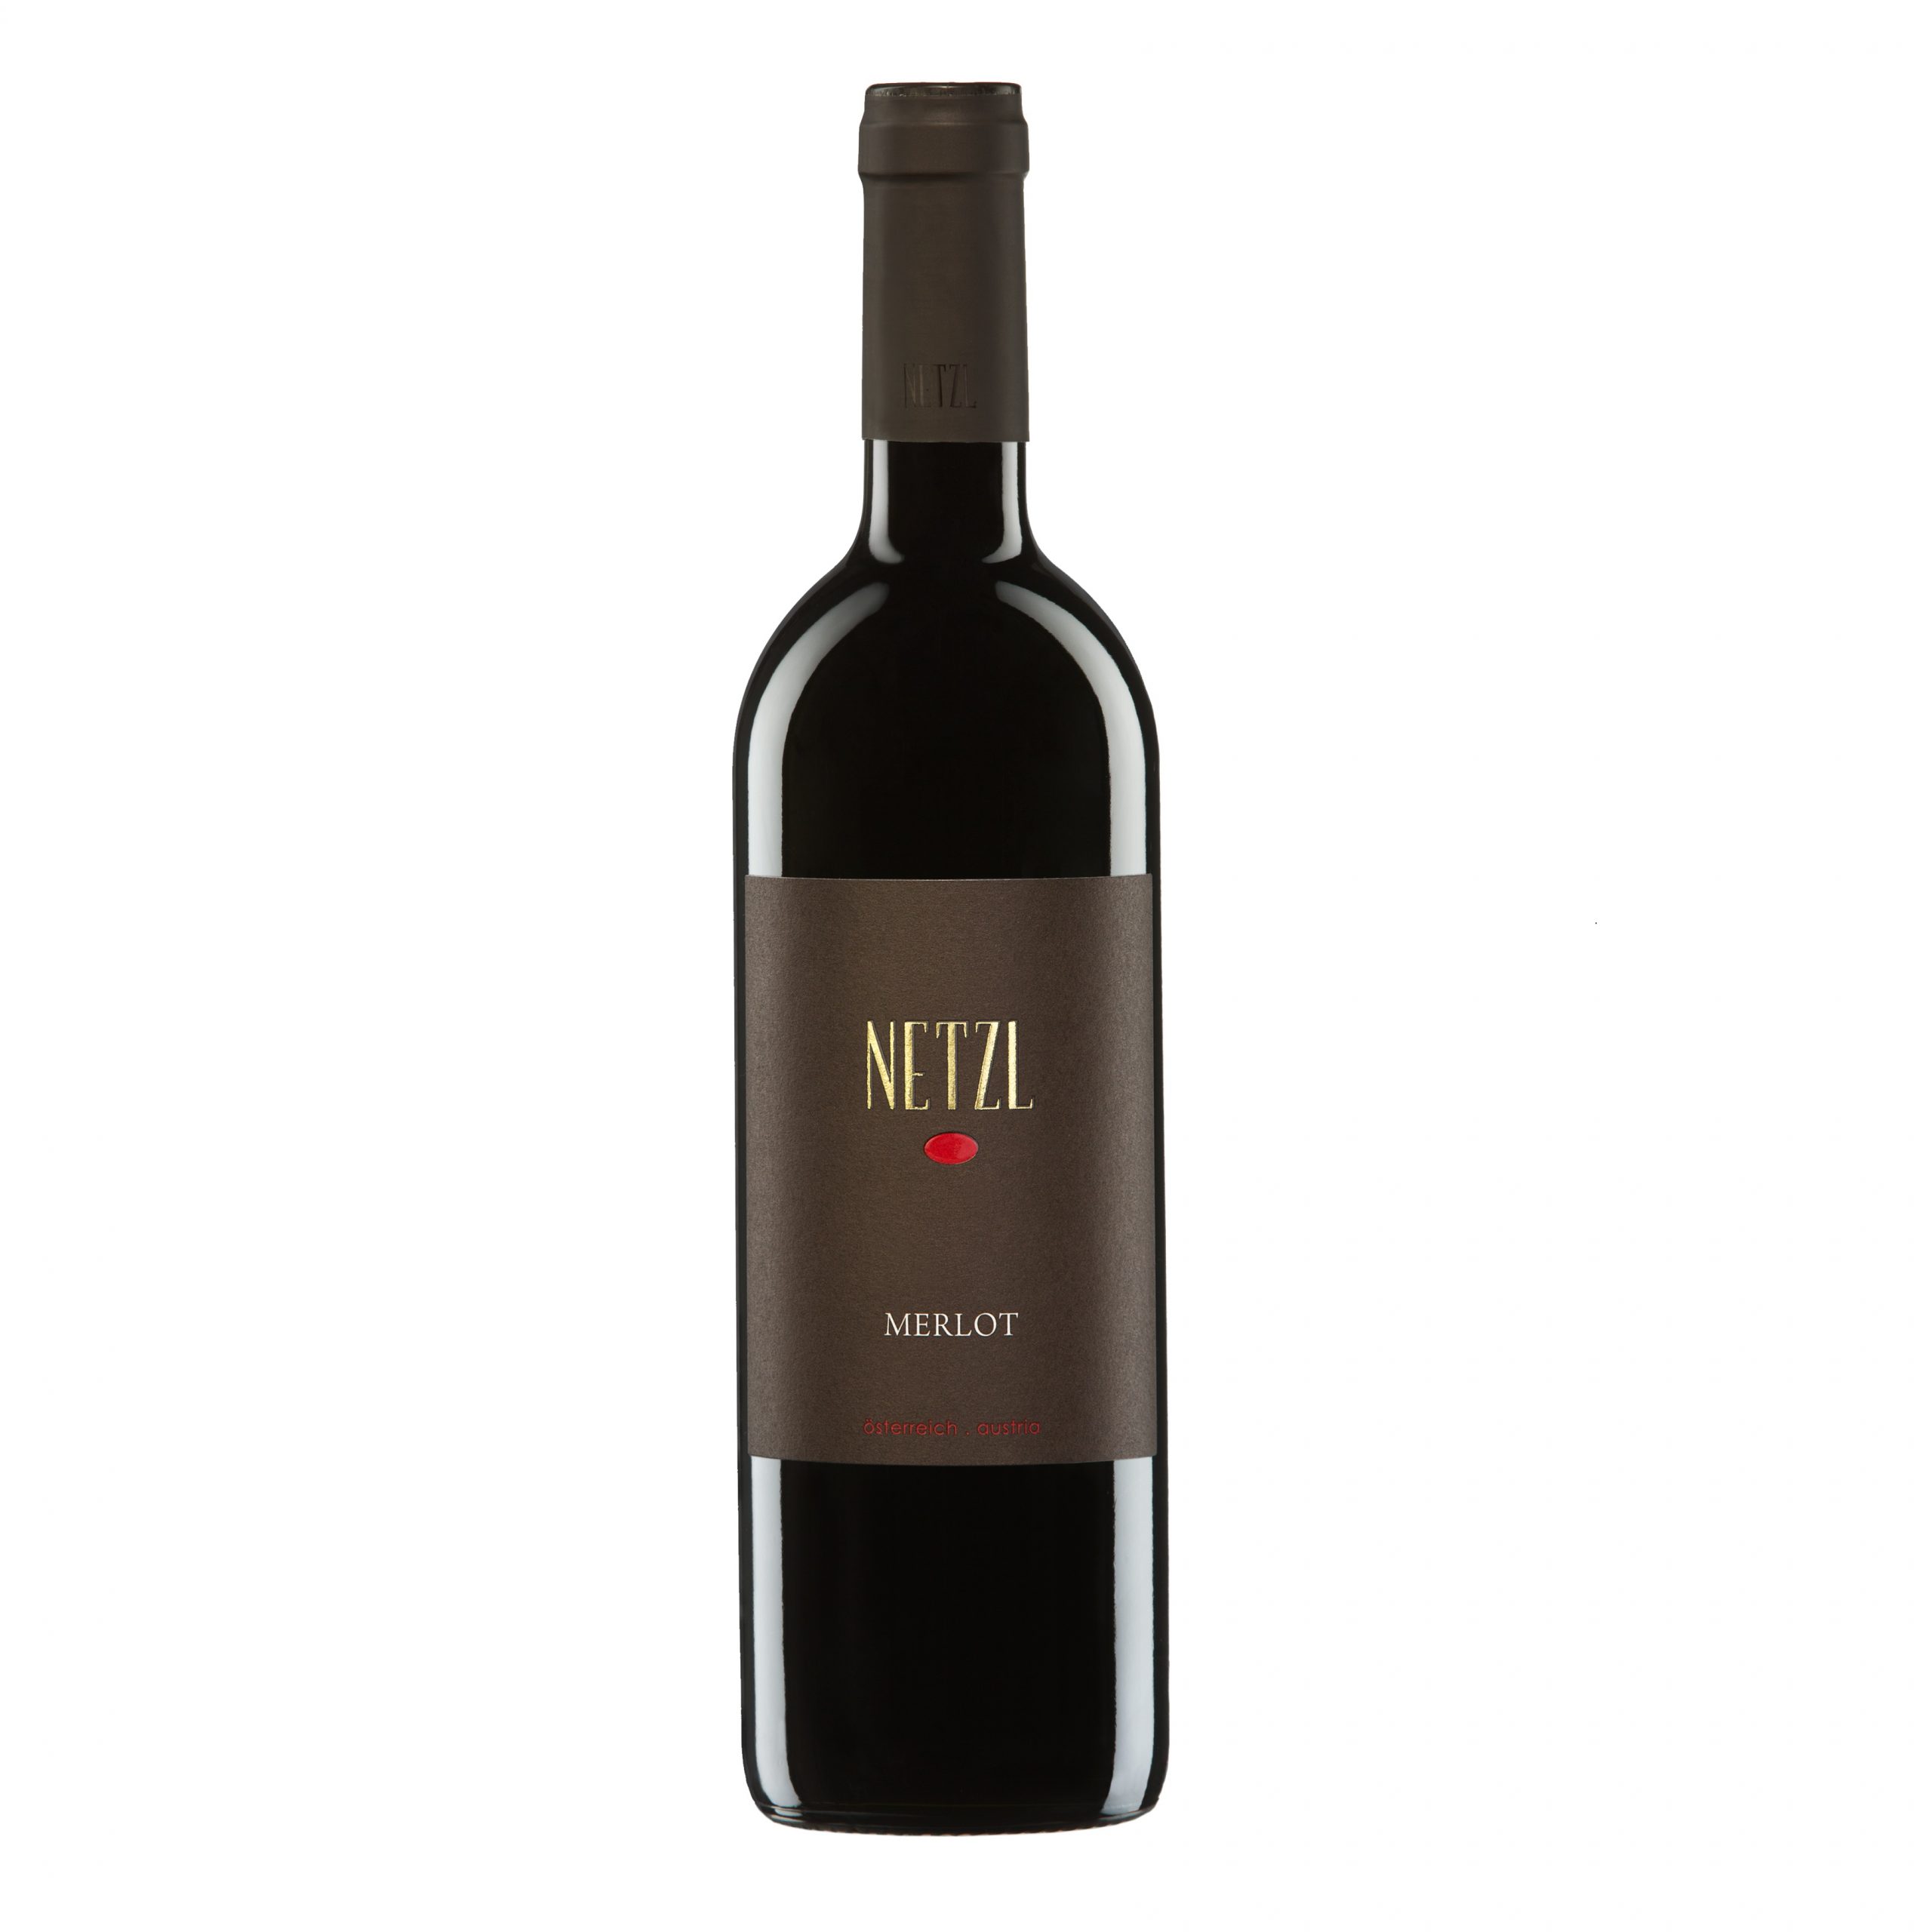 Merlot - Netzl - Buy Austrian Wine in Malta - Holy Wines - Red wine - Full Body - High Alcohol